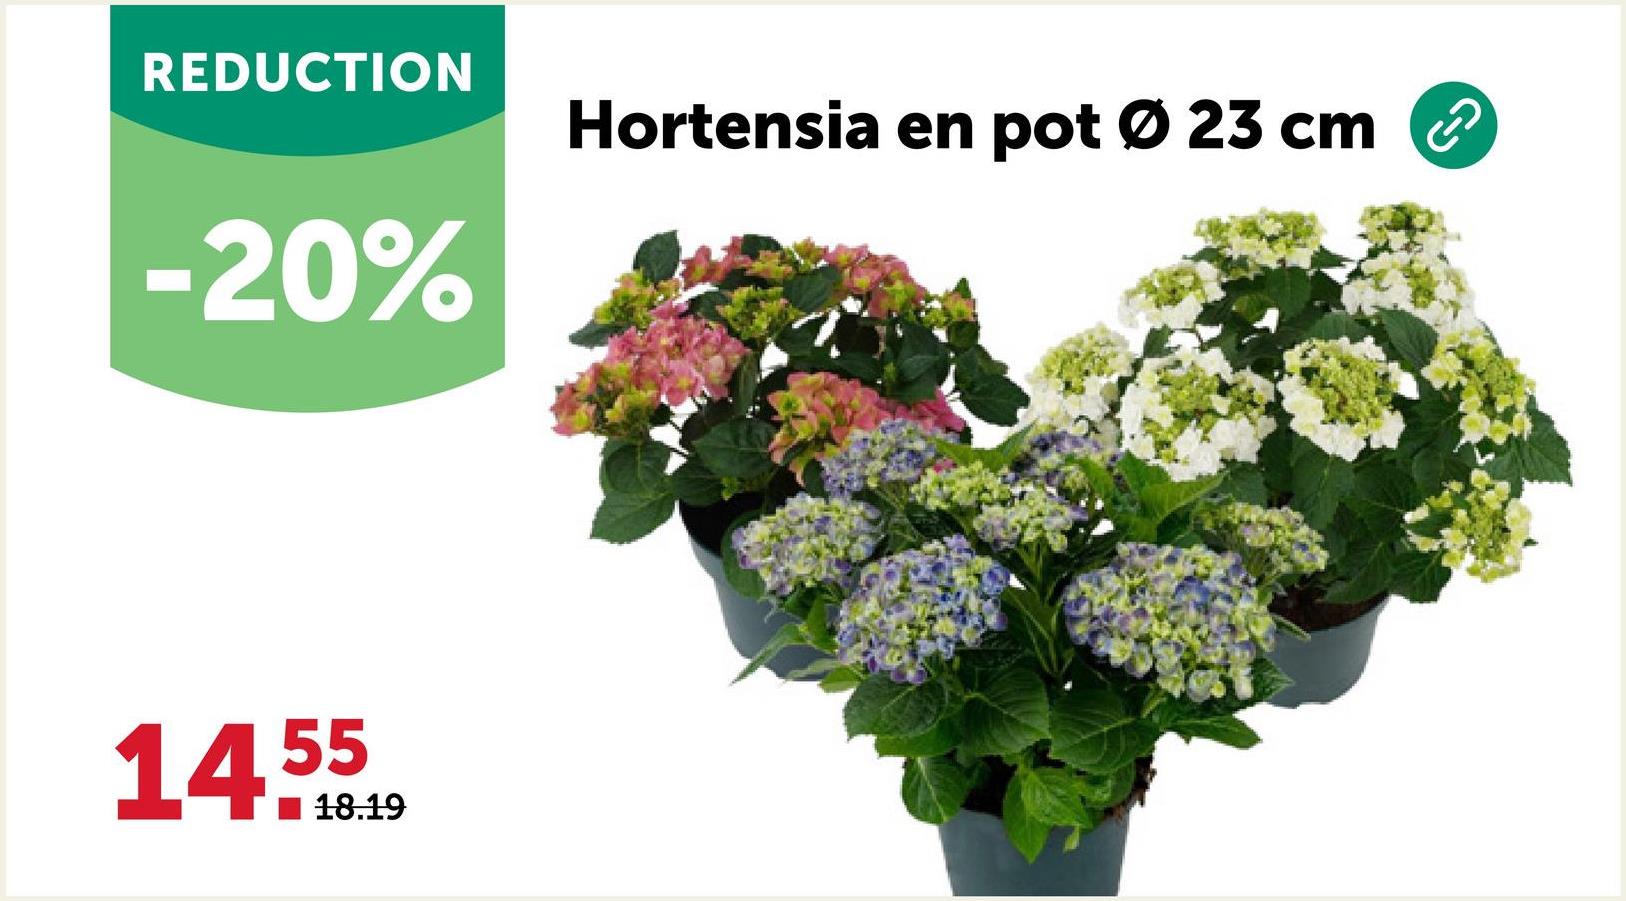 REDUCTION
-20%
55
14.10.19
18.19
Hortensia en pot Ø 23 cm